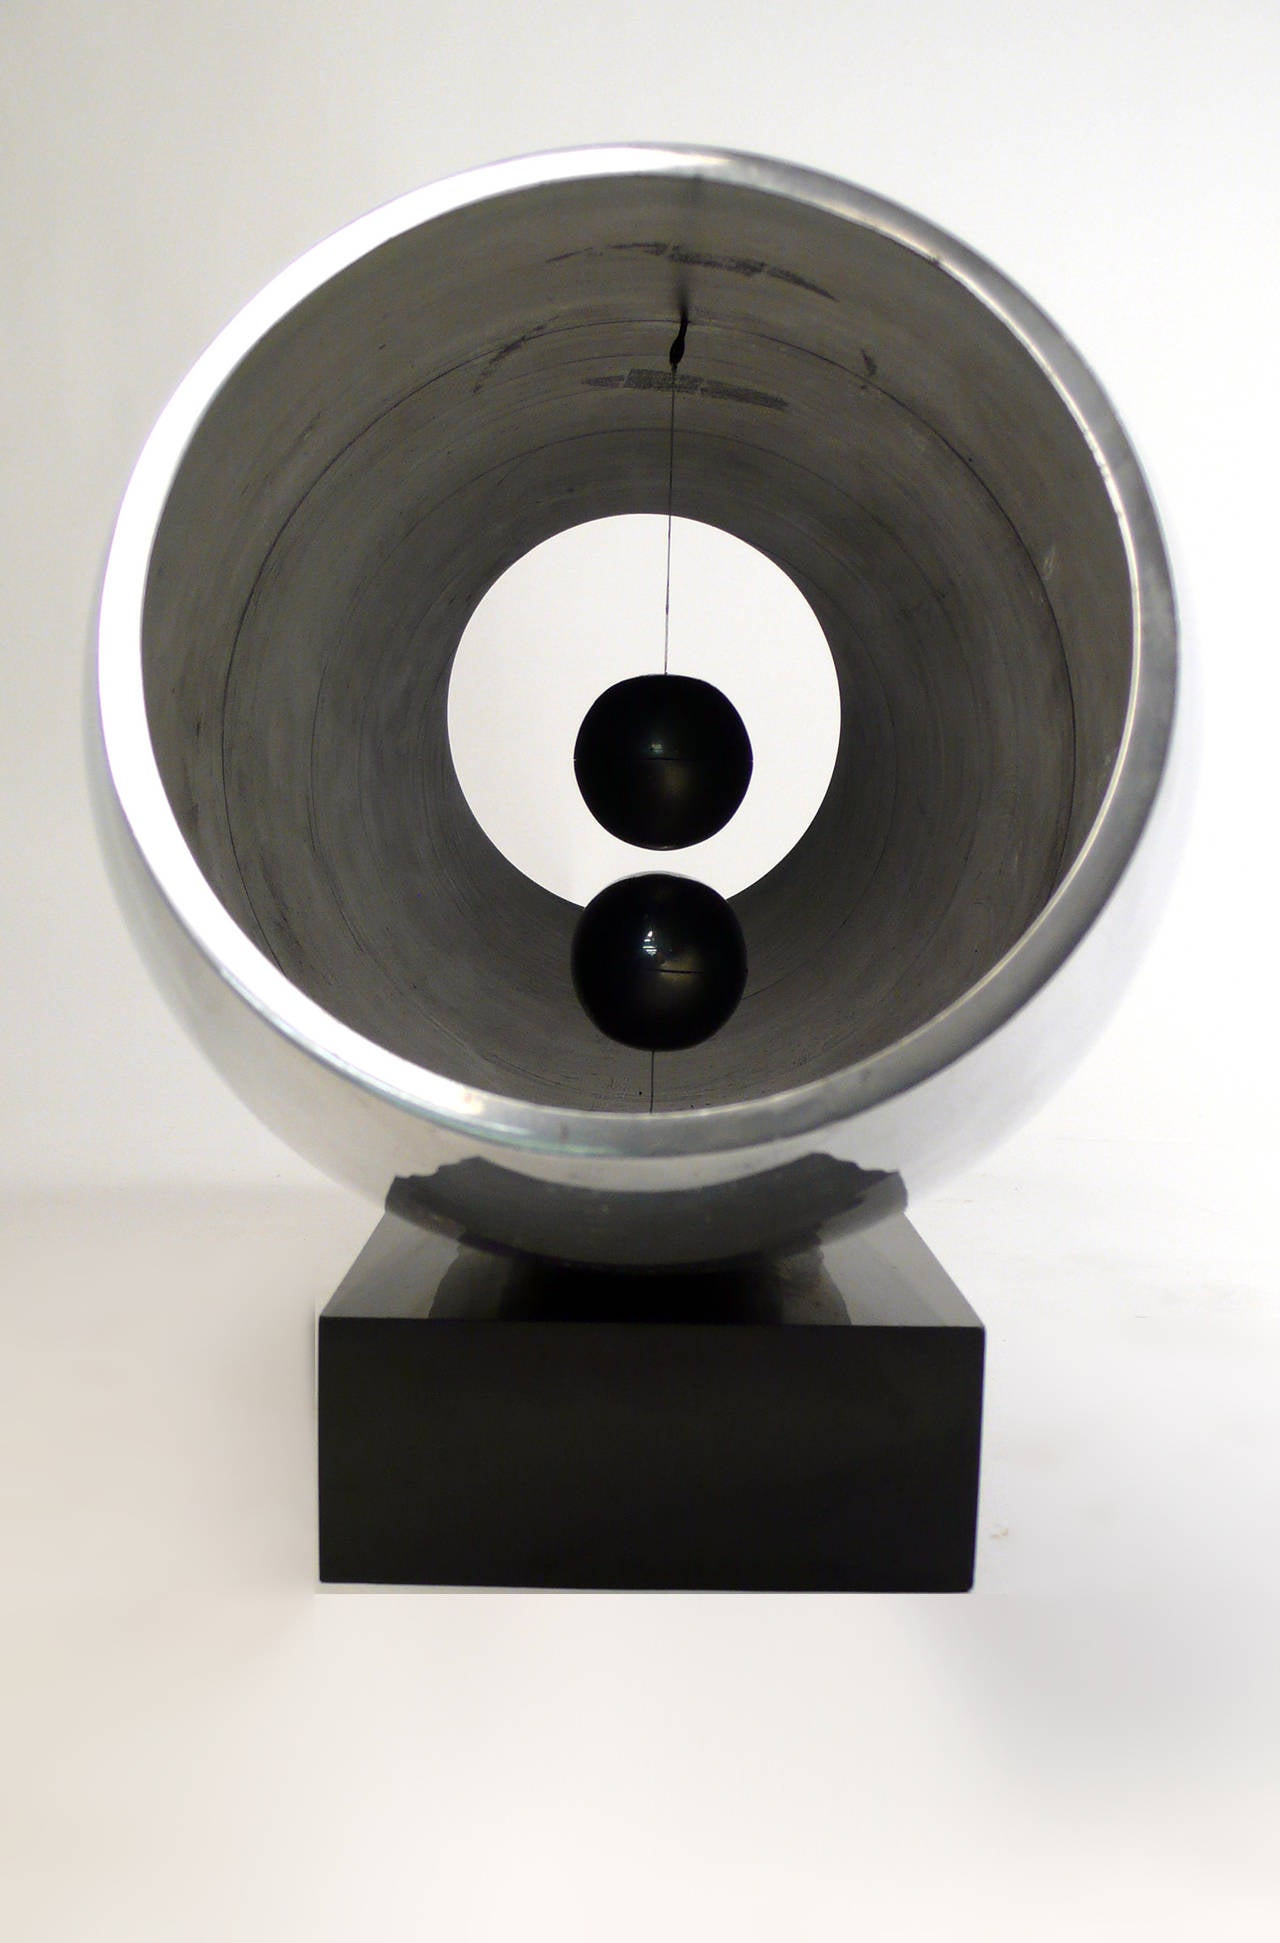 William Alberto Collie 'Spatial Absolutes' Anti-Gravitational Sculpture 1